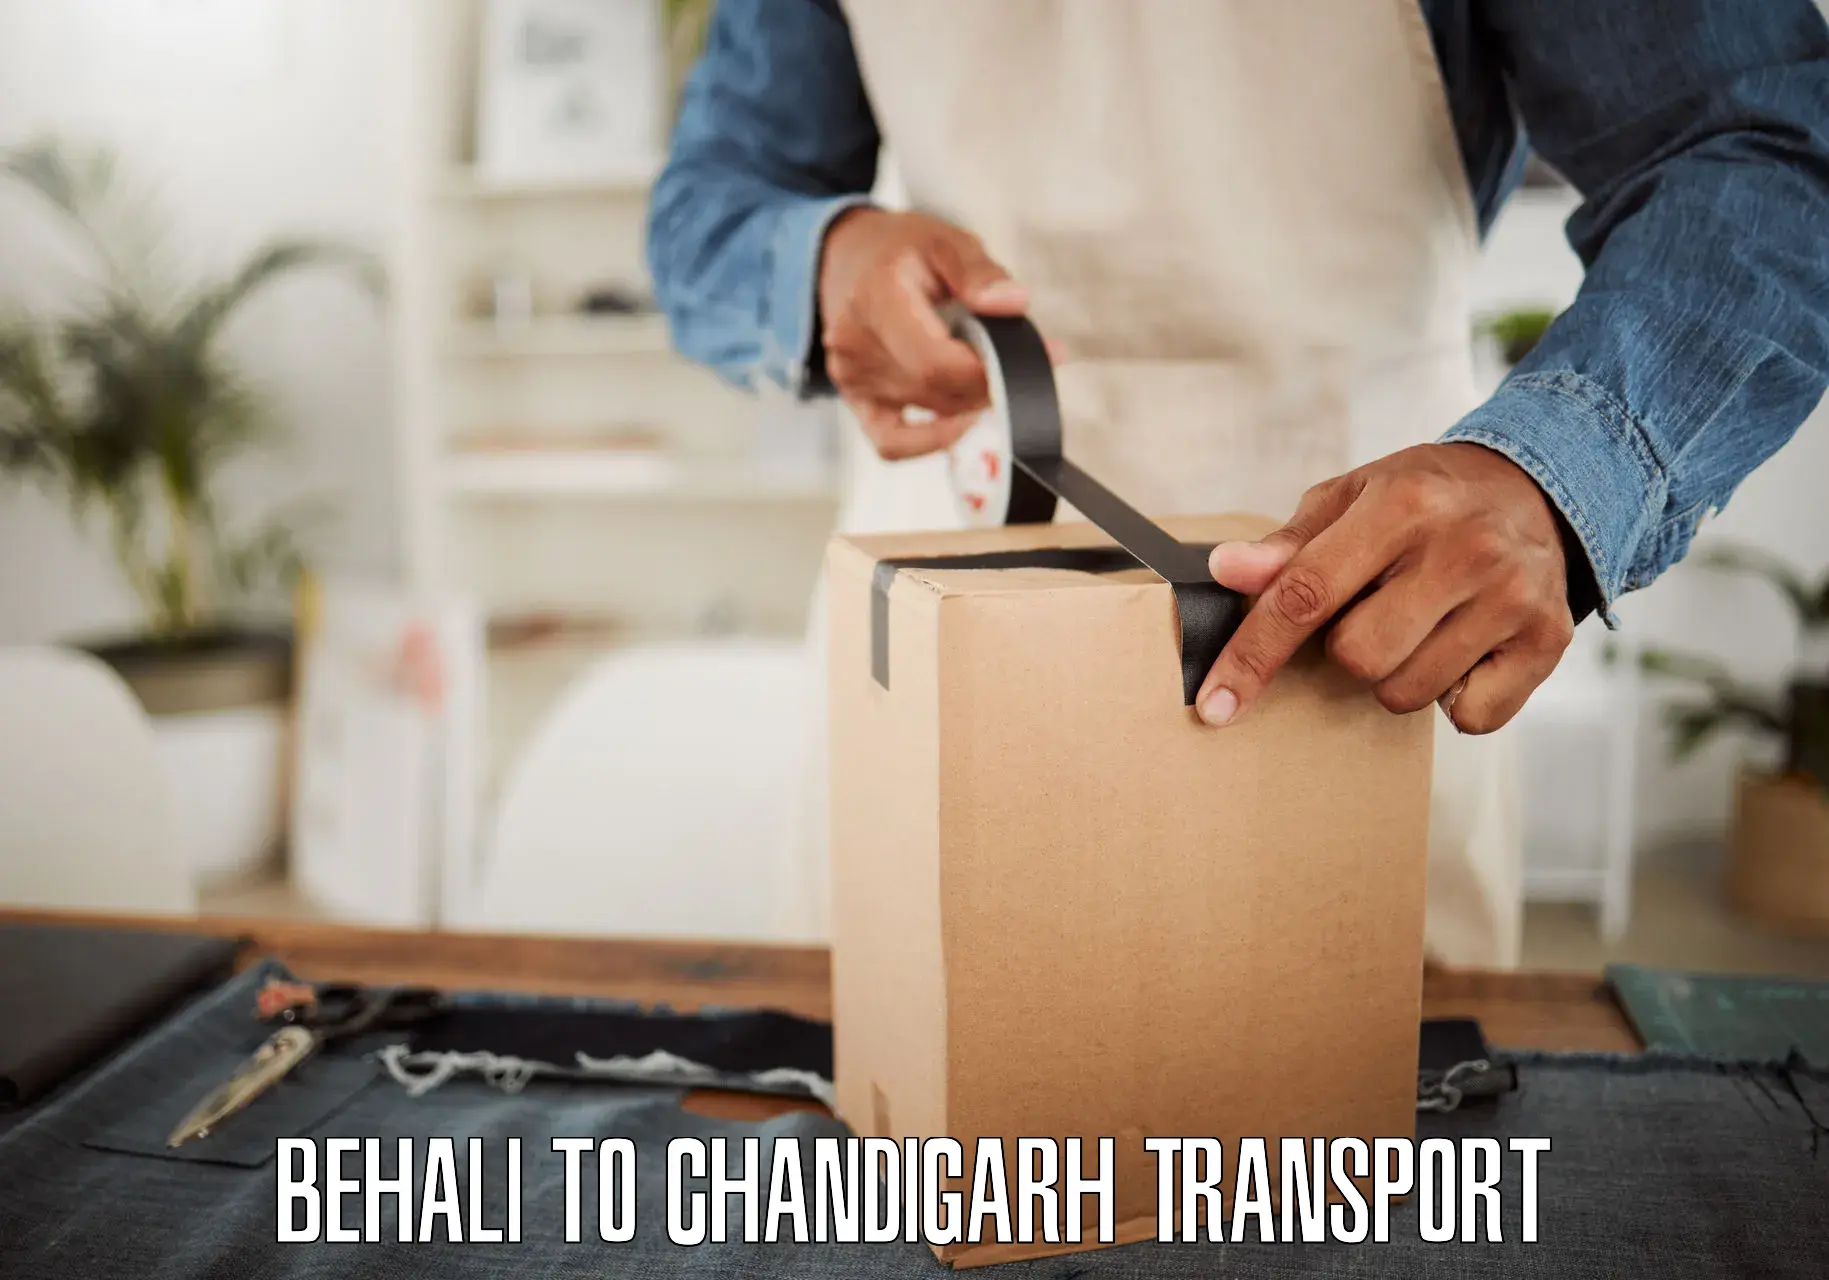 Road transport online services Behali to Chandigarh